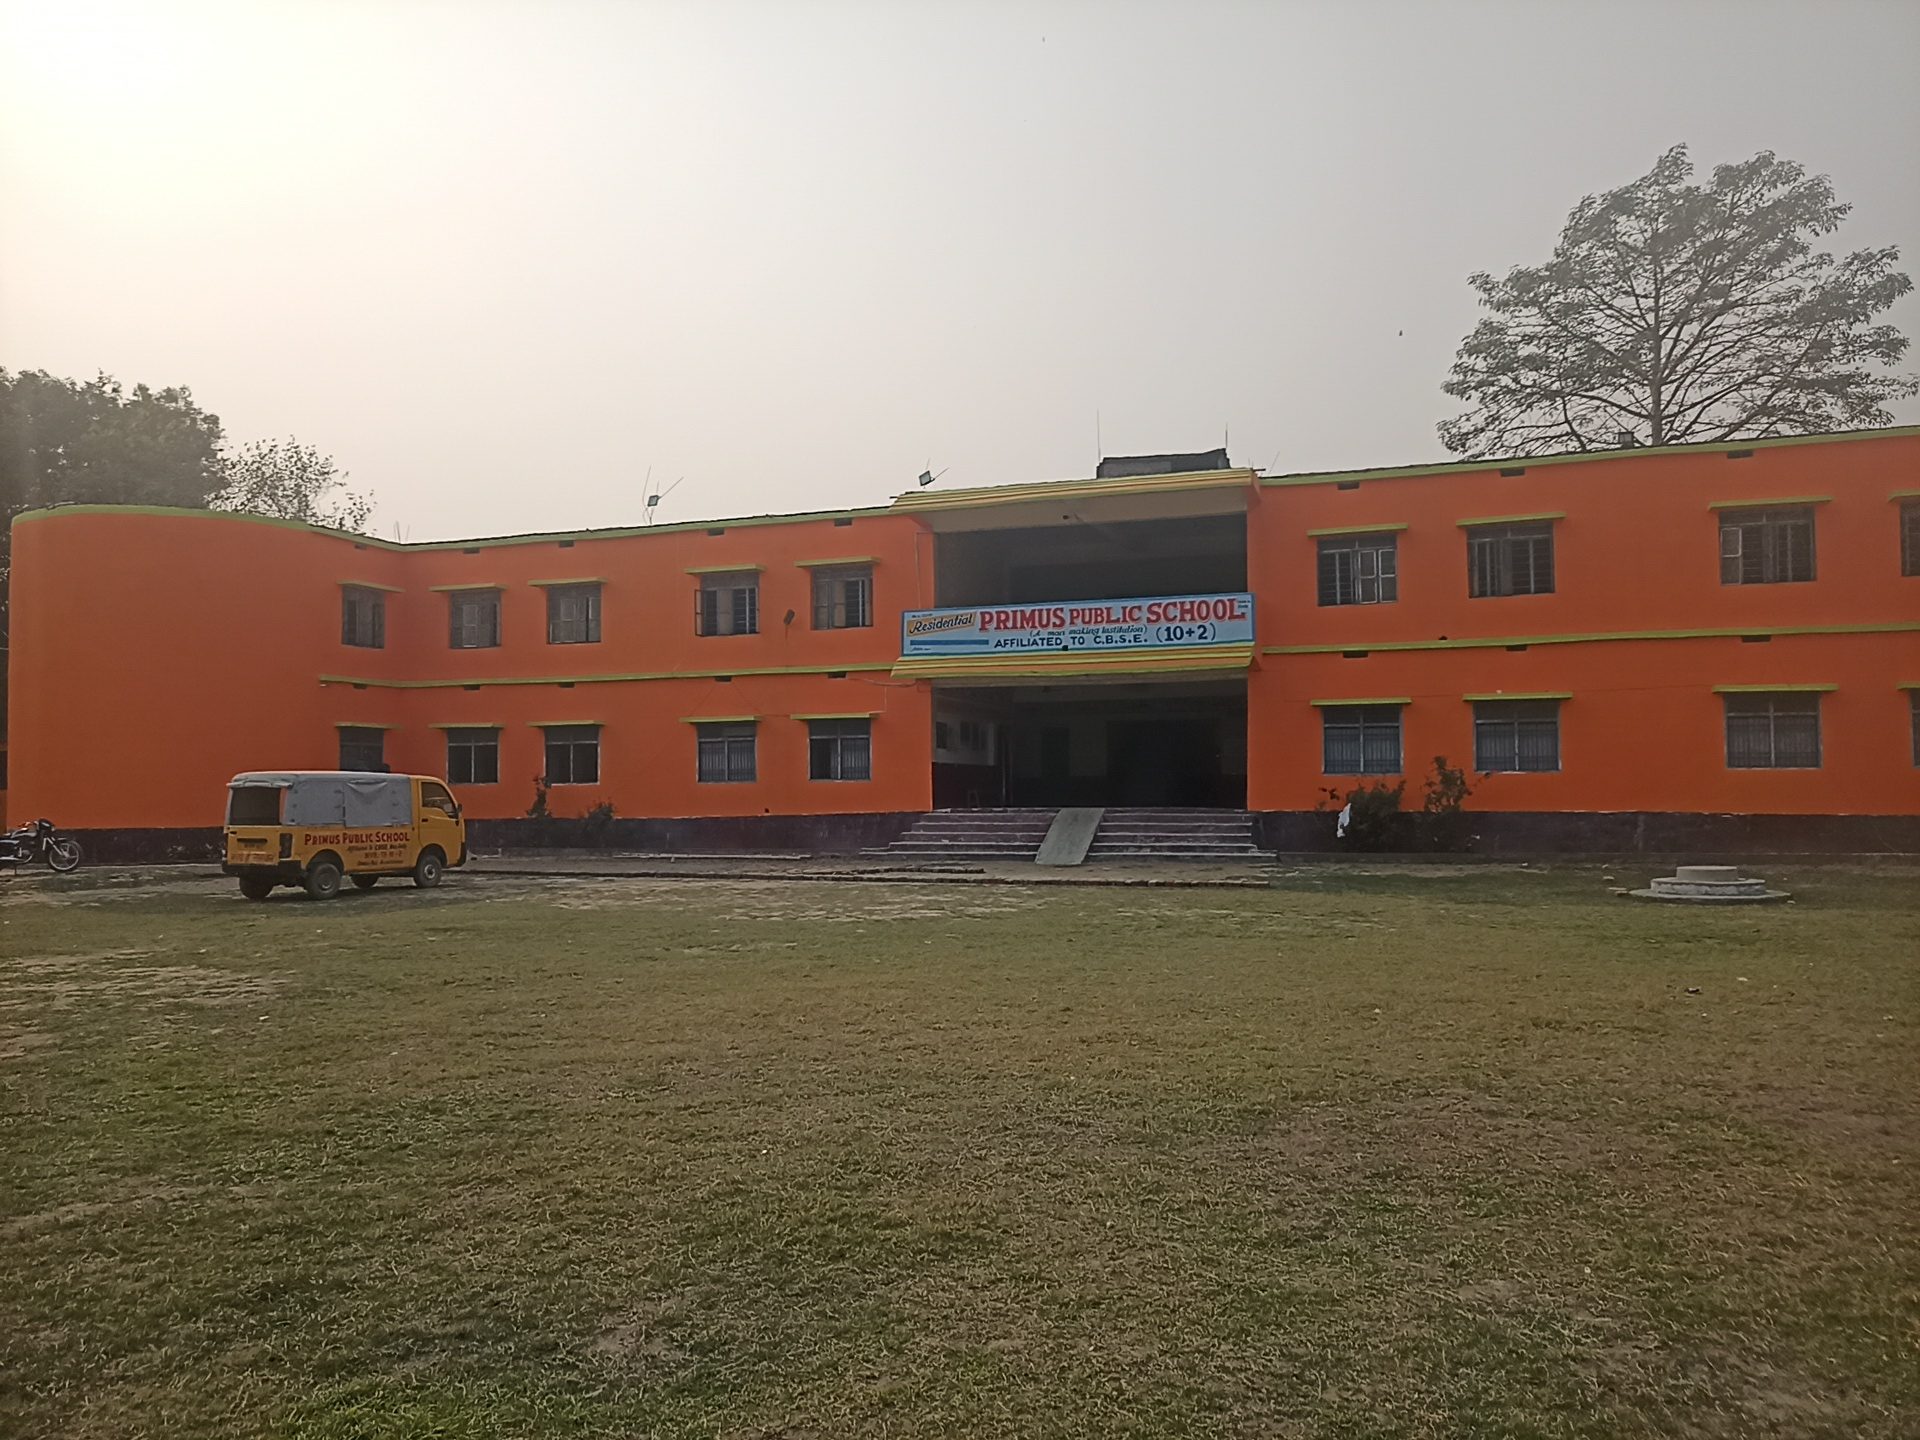 PRIMUS PUBLIC SCHOOL